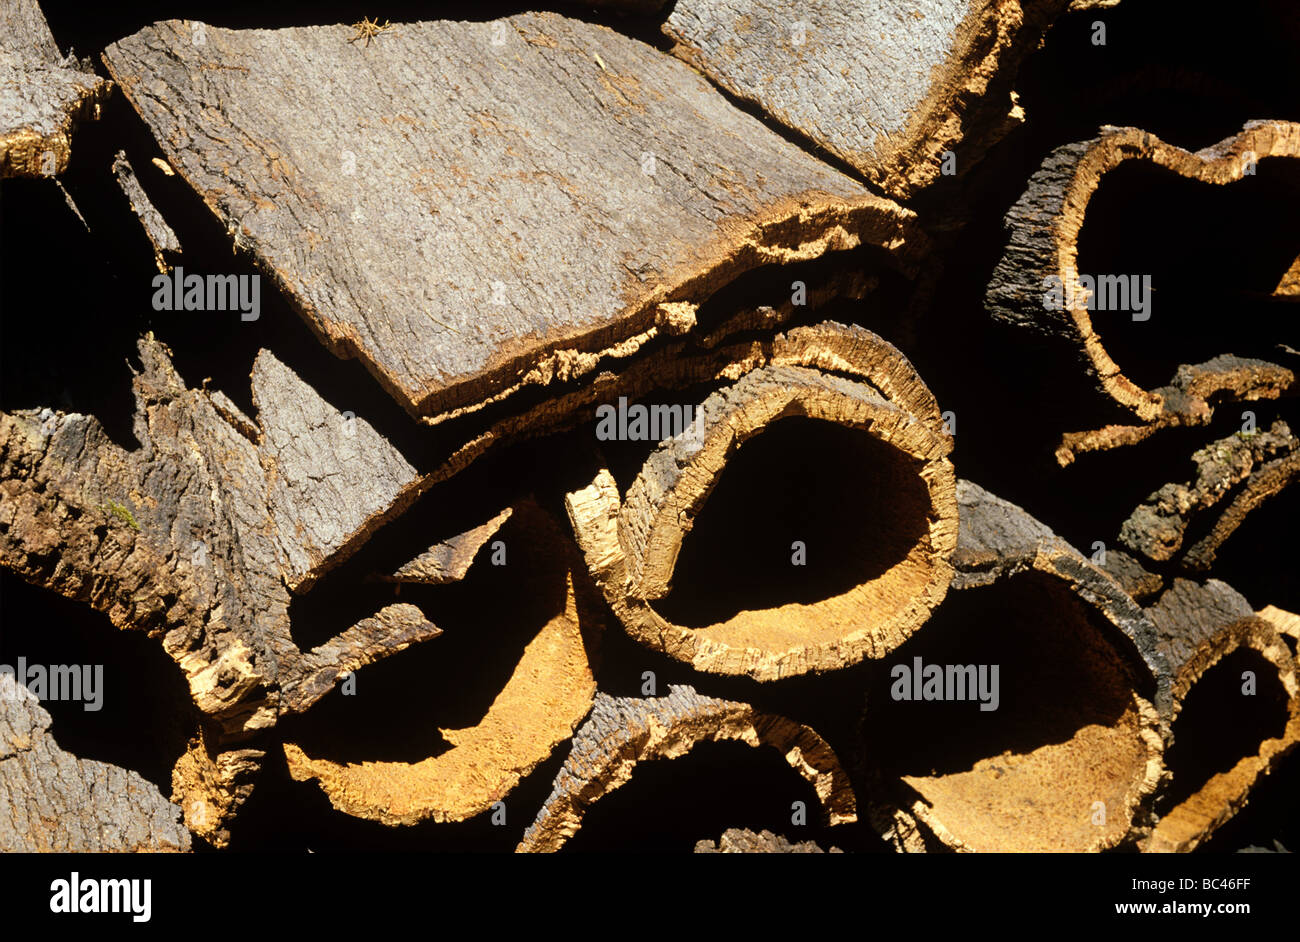 Le chêne-liège Quercus suber récolté de l'écorce pour la fabrication de bouchons Banque D'Images